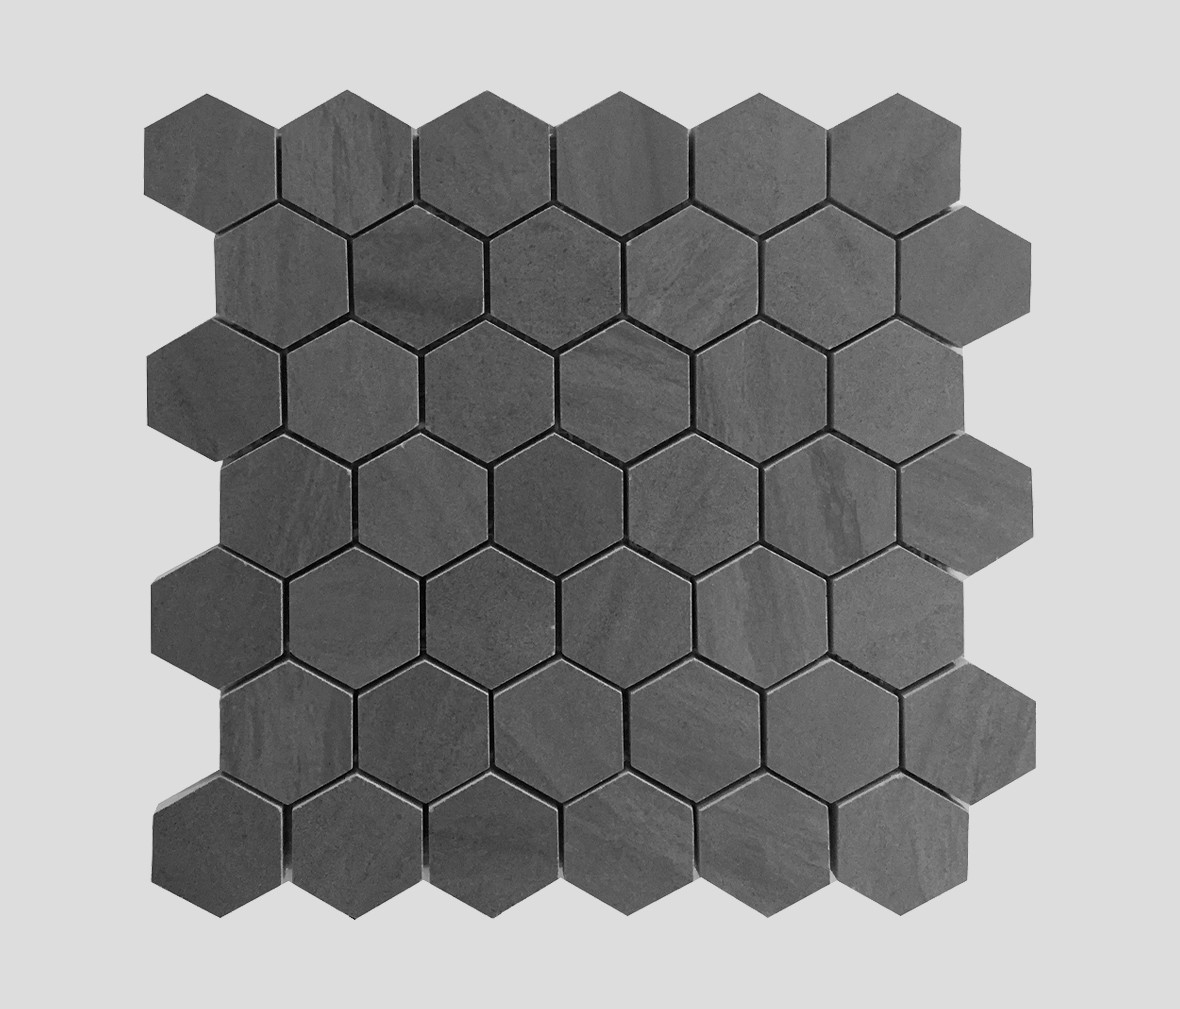 达米雅瓷砖 DR6840L(六边形)型号墙砖釉面砖 瓷土材质绿色环保